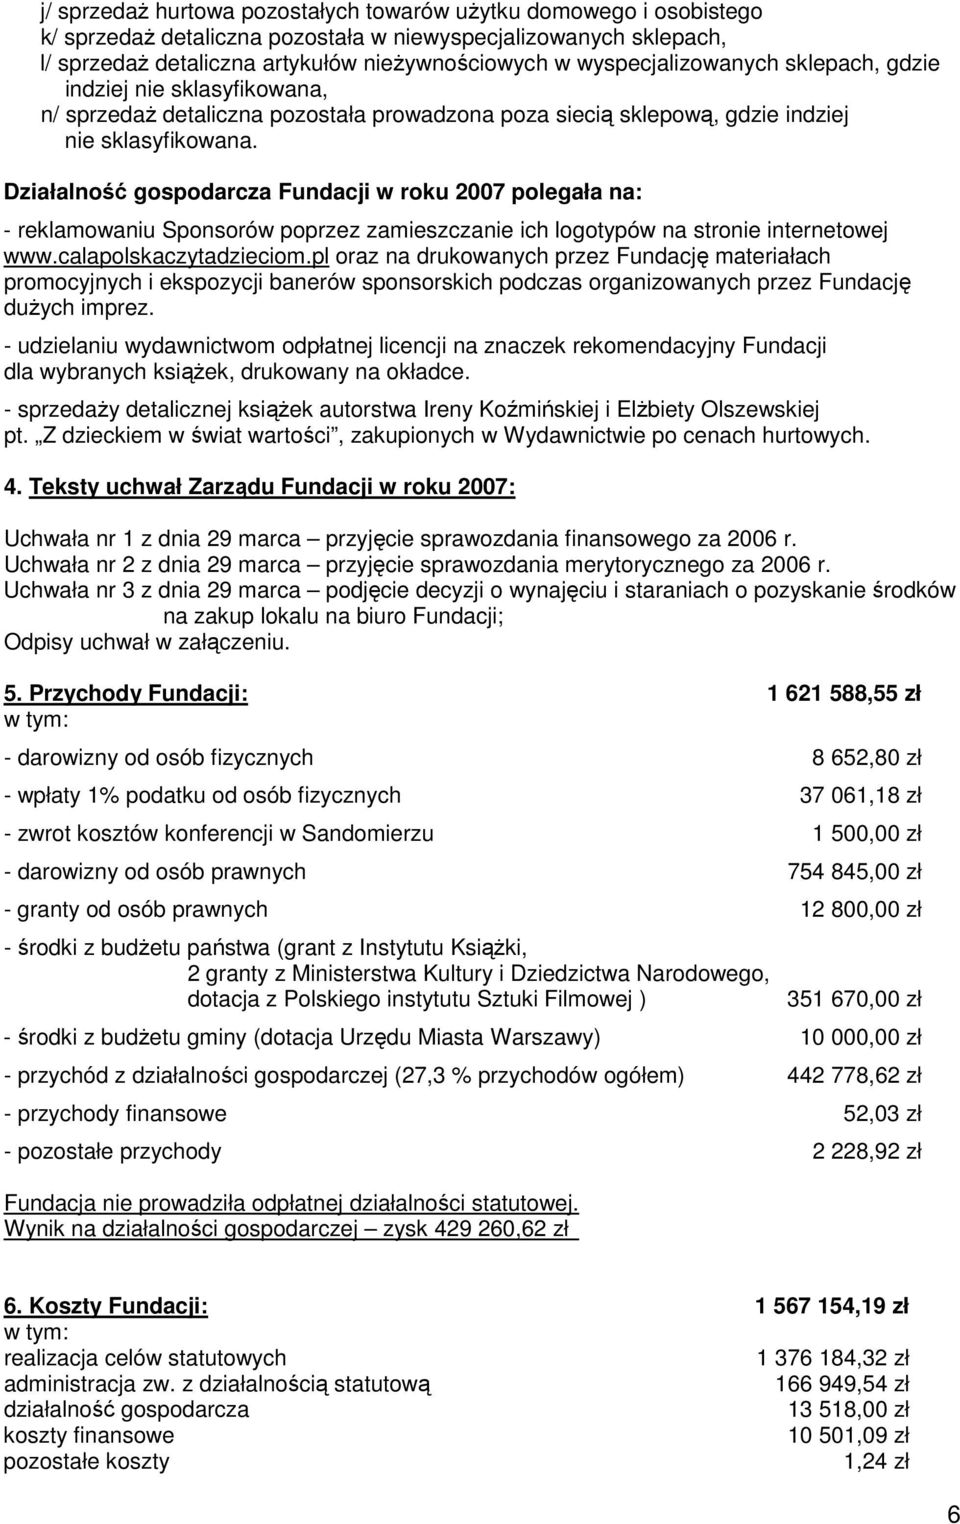 Działalność gospodarcza Fundacji w roku 2007 polegała na: - reklamowaniu Sponsorów poprzez zamieszczanie ich logotypów na stronie internetowej www.calapolskaczytadzieciom.